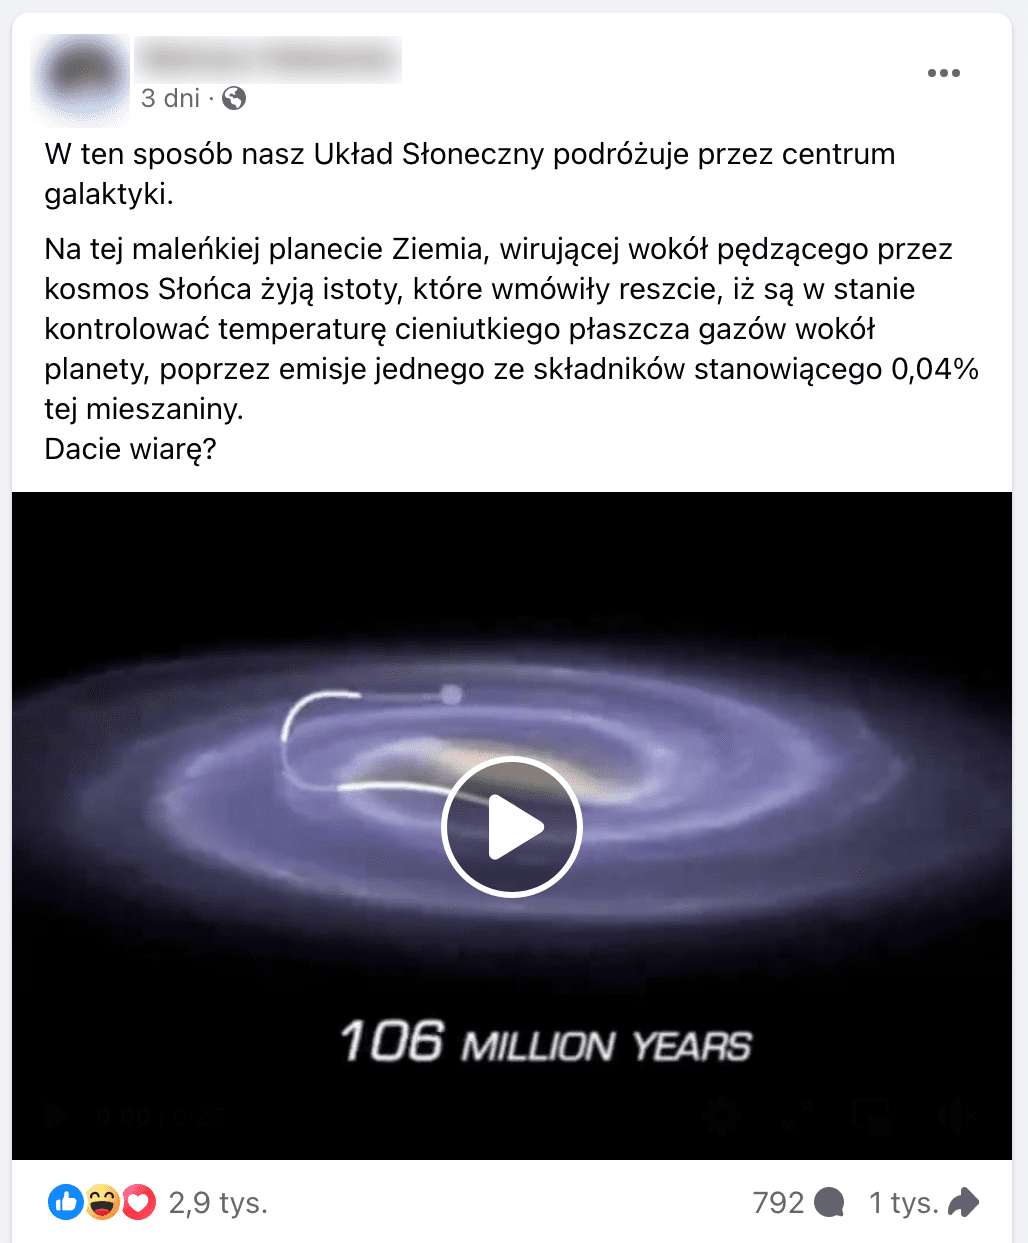 Zrzut ekranu posta na Facebooku. W kadrze dołączonego filmu znajduje się animowane przedstawienie orbity Układu Słonecznego wokół centrum galaktyki.